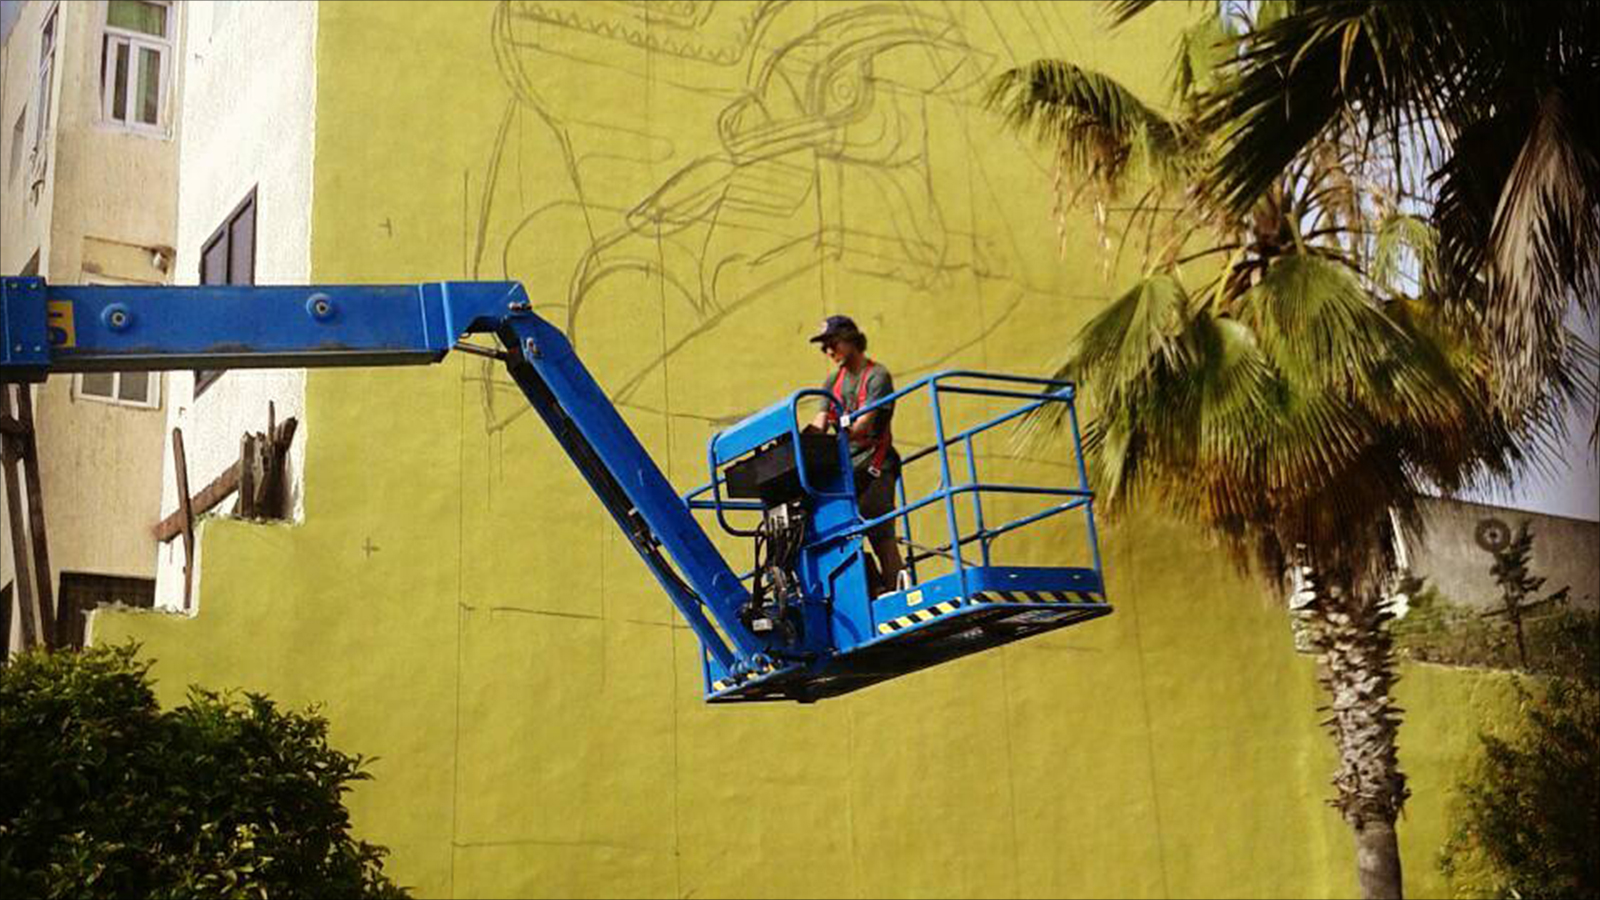 ‪جداريات تحت تصرف فناني الغرافيتي لتزيينها في إطار فعاليات 